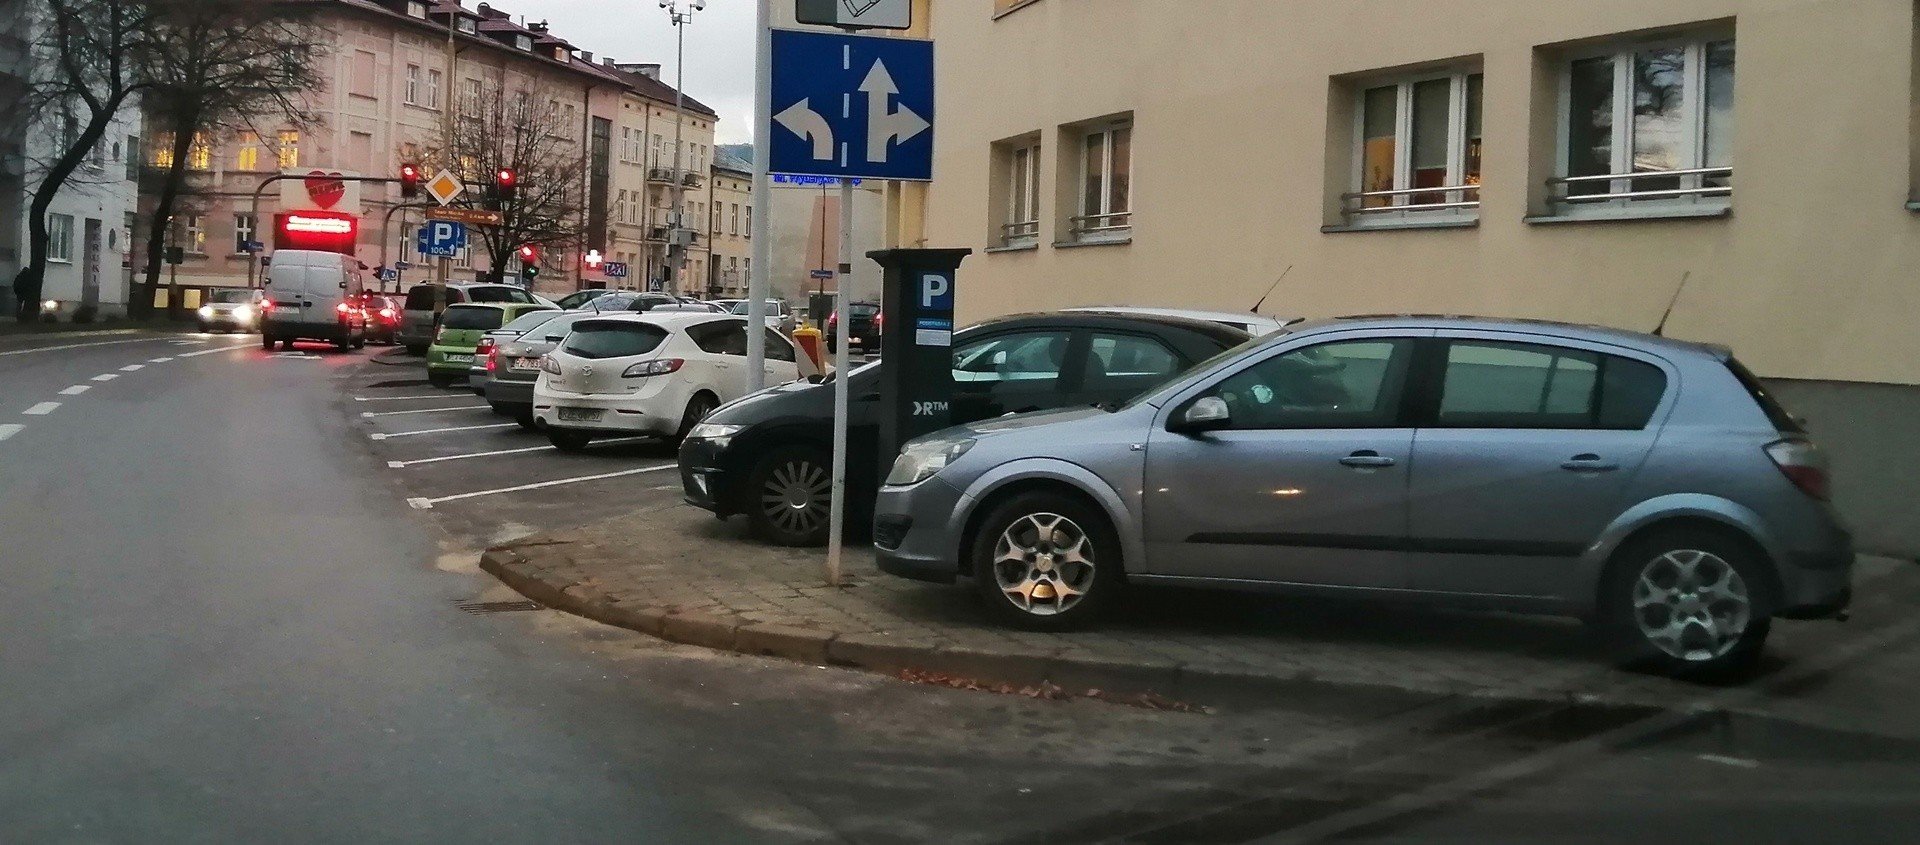 W centrum Rzeszowa wciąż parkingowa wolna amerykanka